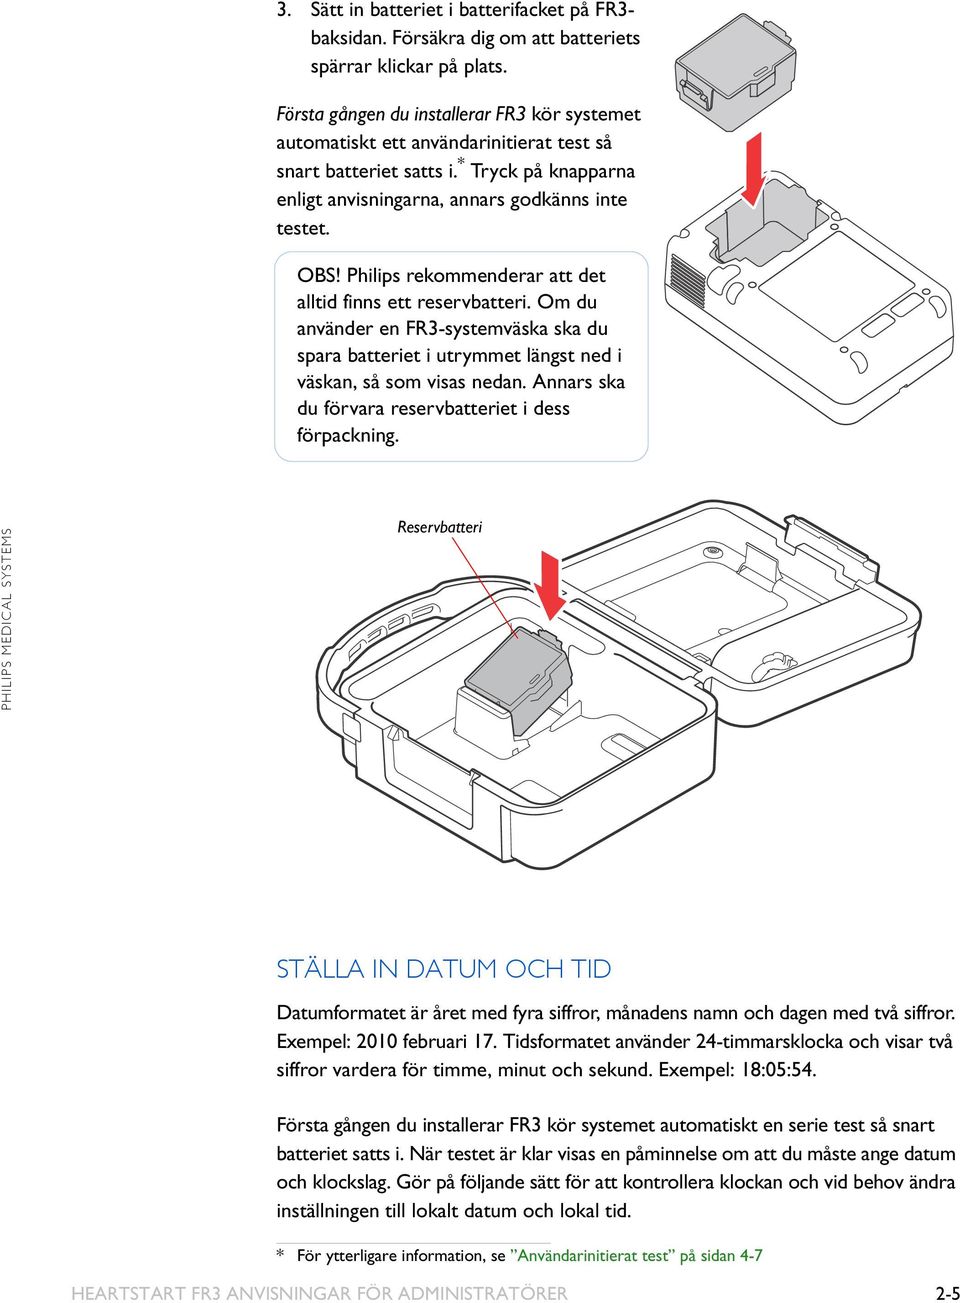 Philips rekommenderar att det alltid finns ett reservbatteri. Om du använder en FR3-systemväska ska du spara batteriet i utrymmet längst ned i väskan, så som visas nedan.